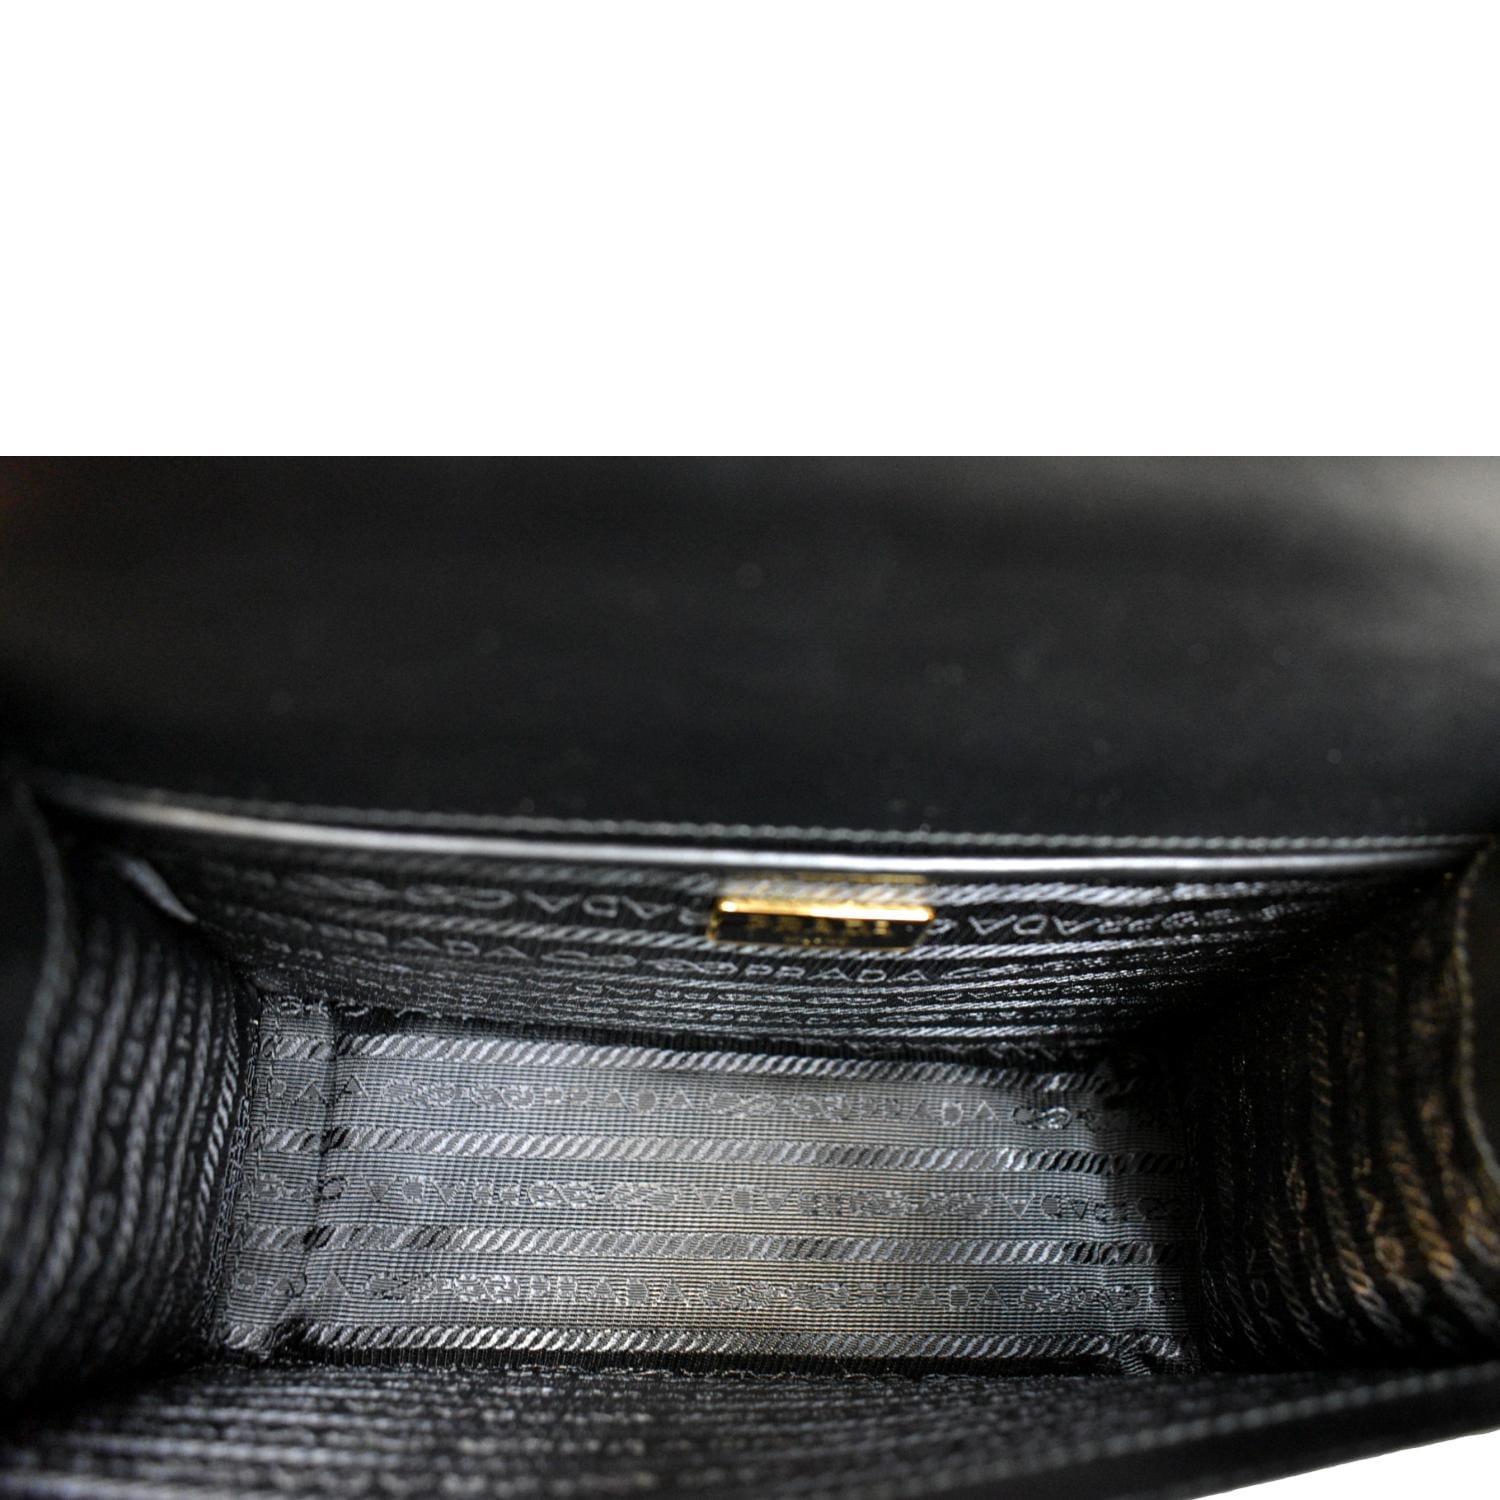 Prada Saffiano Pattina Crossbody Bag - Neutrals Crossbody Bags, Handbags -  PRA414937